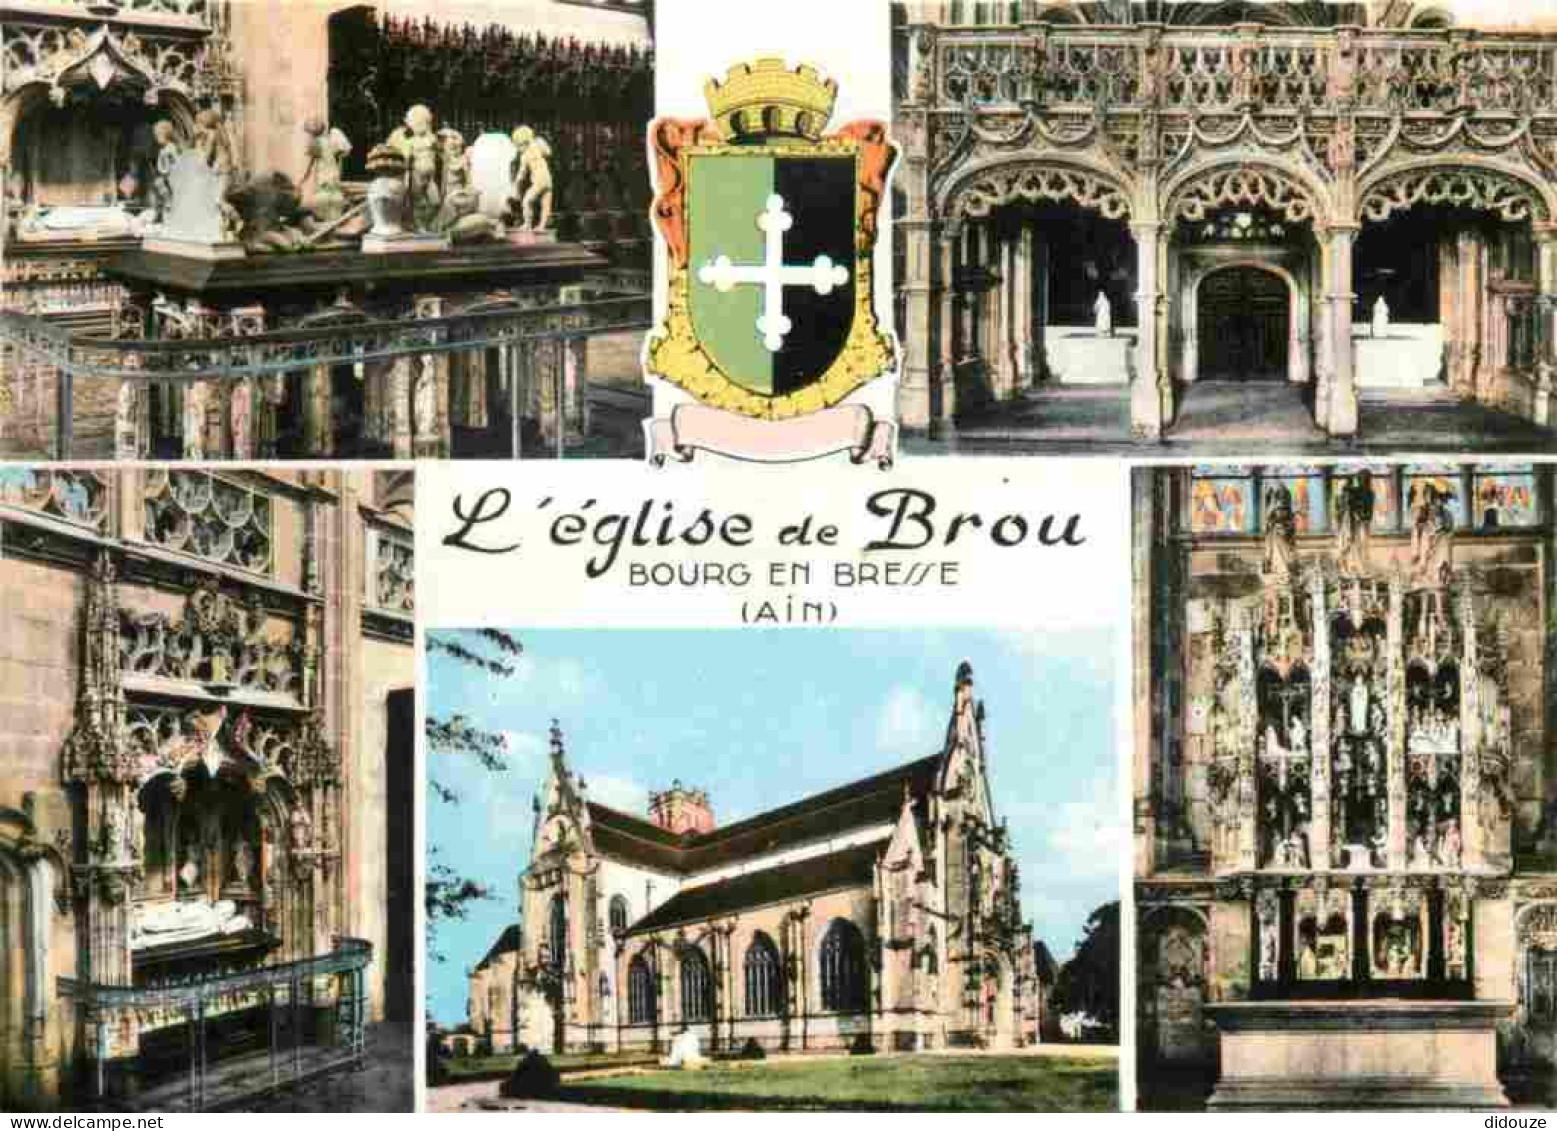 01 - Bourg En Bresse - Eglise De Brou - Intérieur De L'Eglise De Brou - Multivues - Mention Photographie Véritable - Car - Eglise De Brou